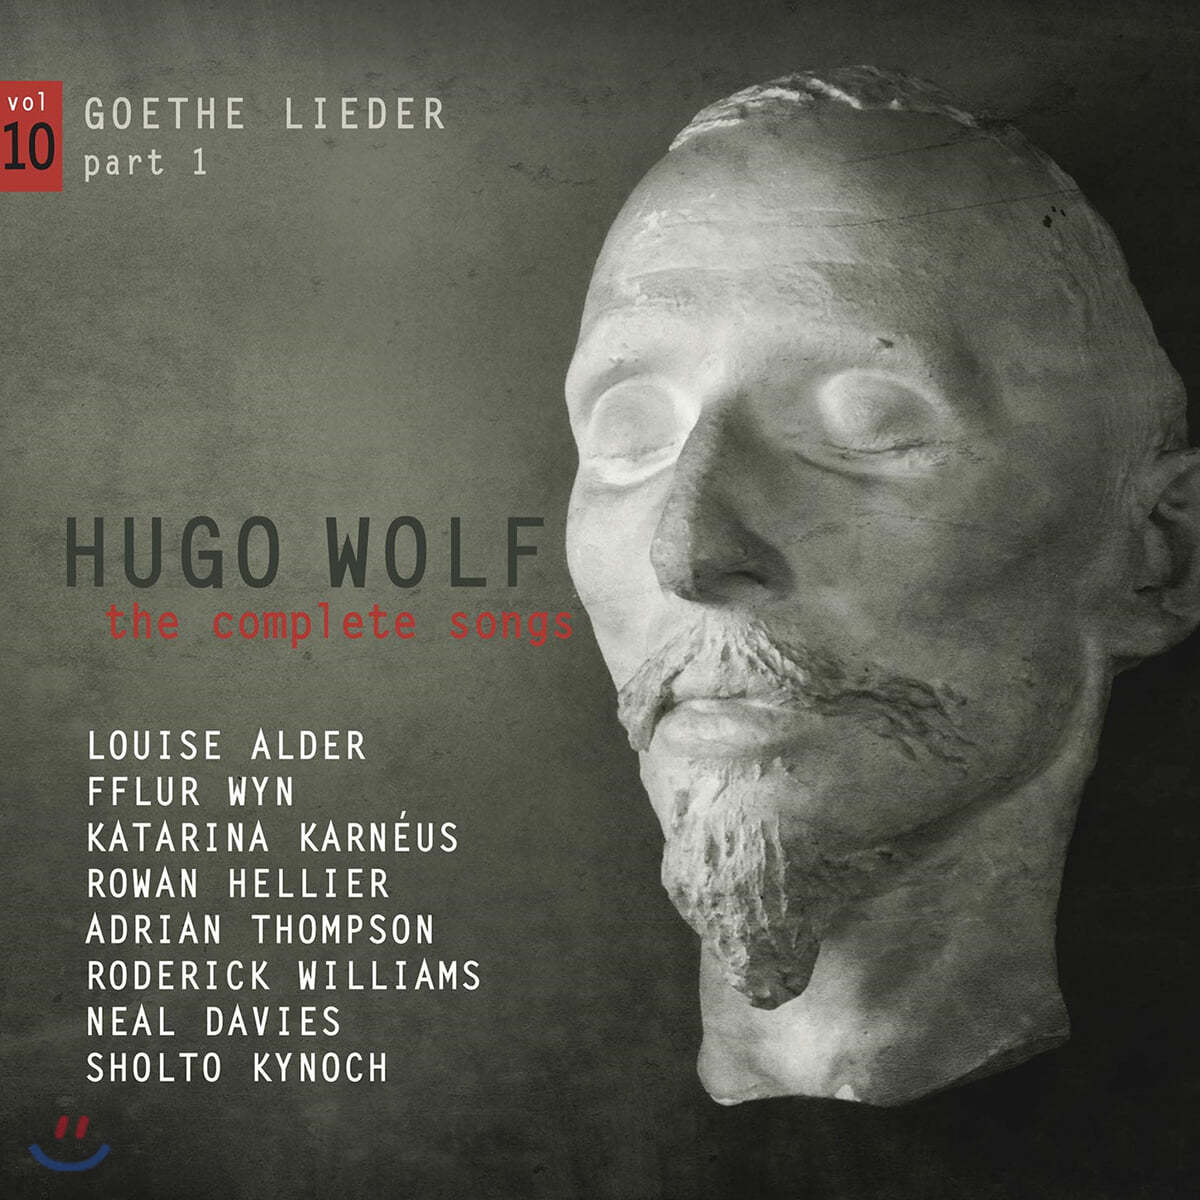 휴고 볼프: 가곡 전곡 10집 - 괴테 가곡 1부 (Hugo Wolf: The Complete Songs Vol. 10)